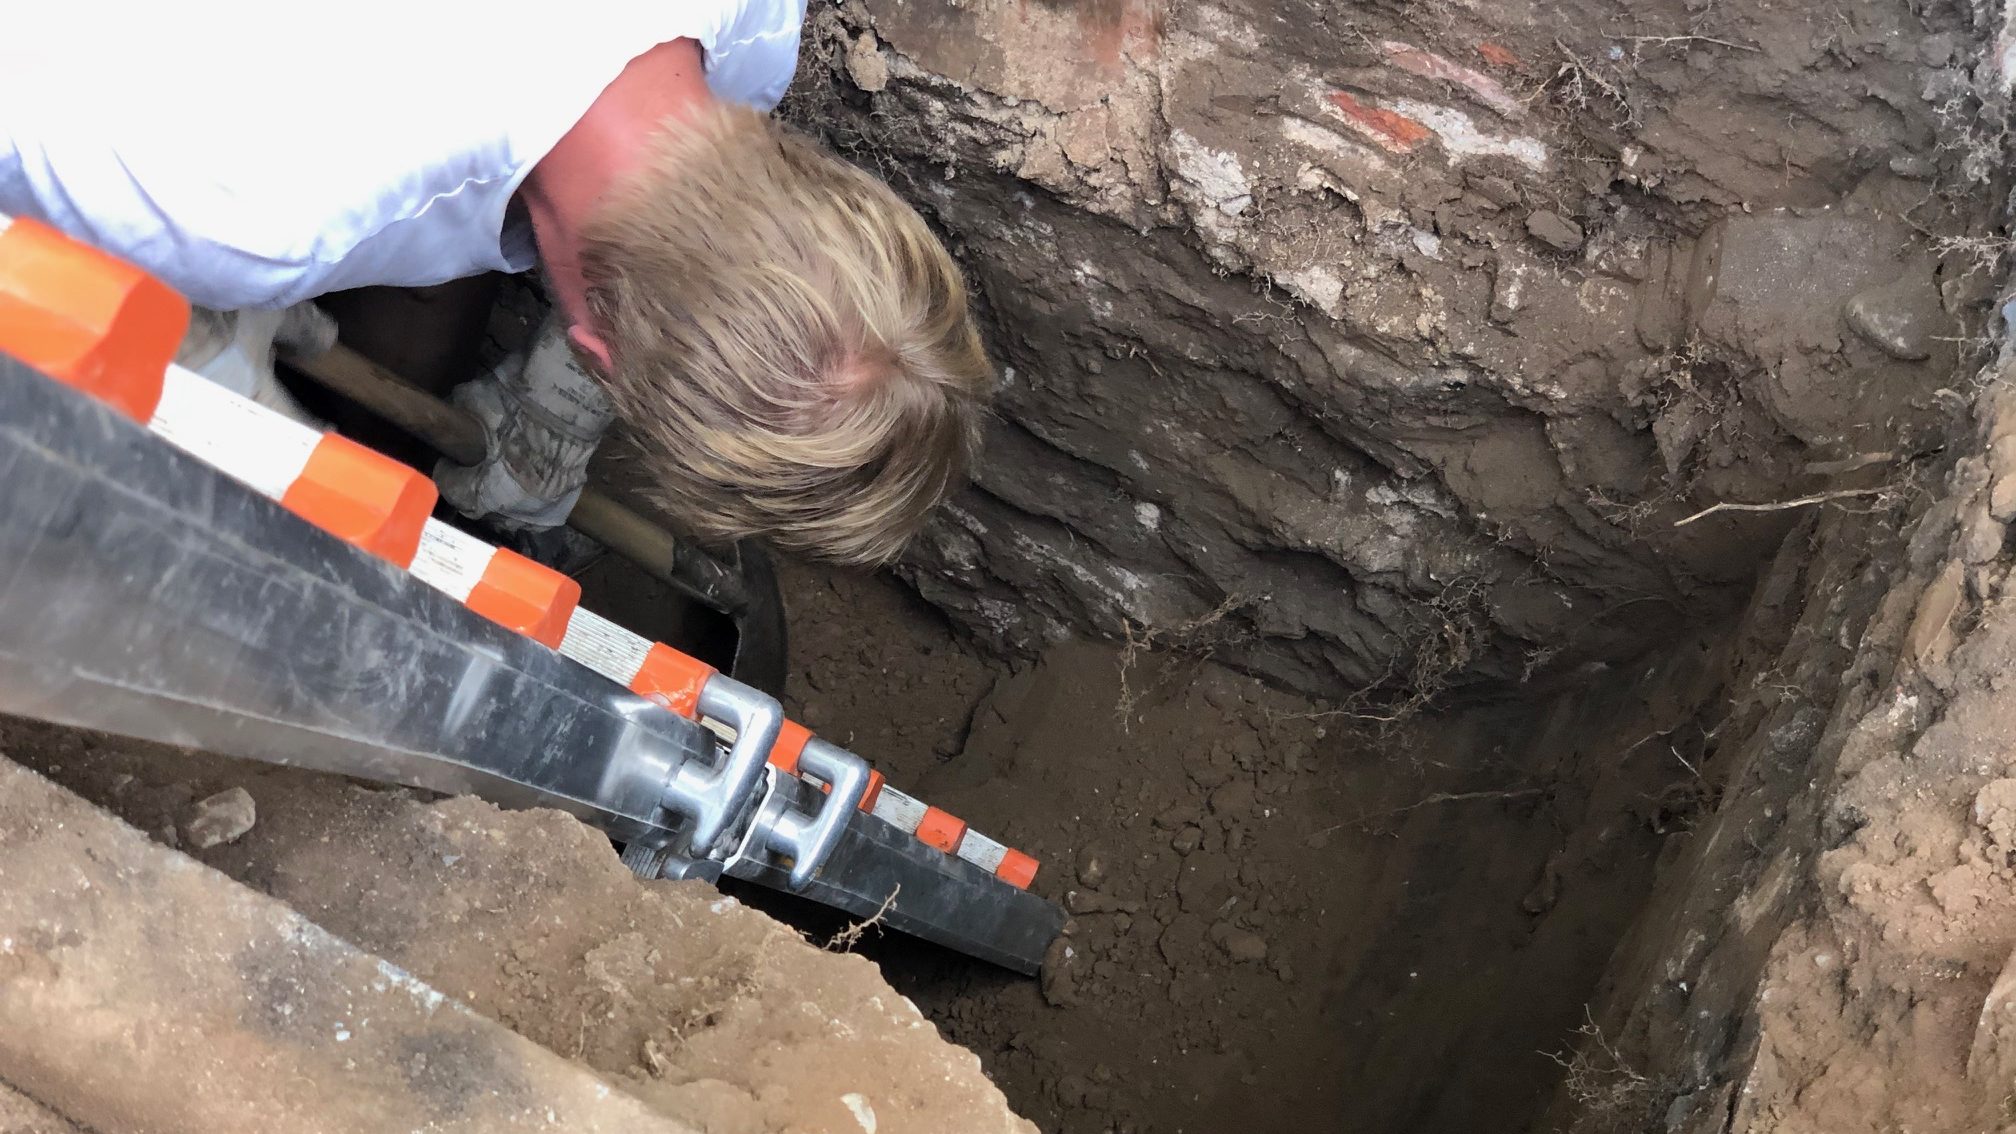 Fundament liegt tiefer als vermutet – die historische Klostermauer am Campus Kartause